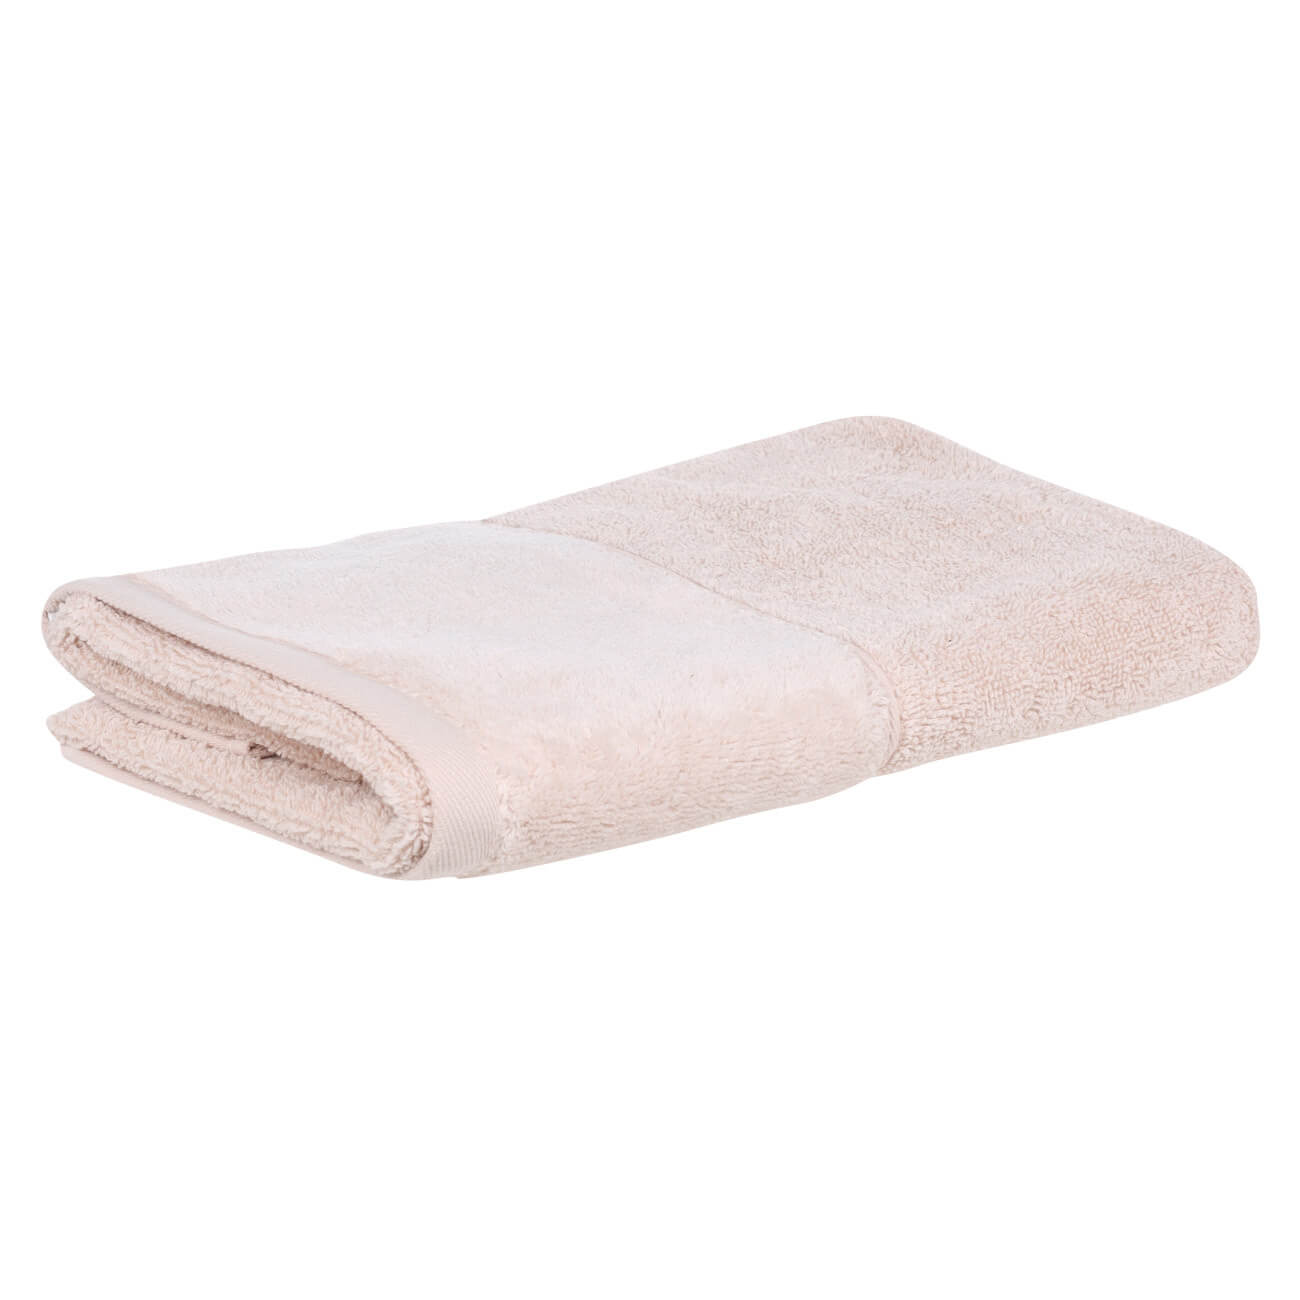 Полотенце, 50х90 см, хлопок, бежевое, Velvet touch полотенце ножки серебро р 50х70